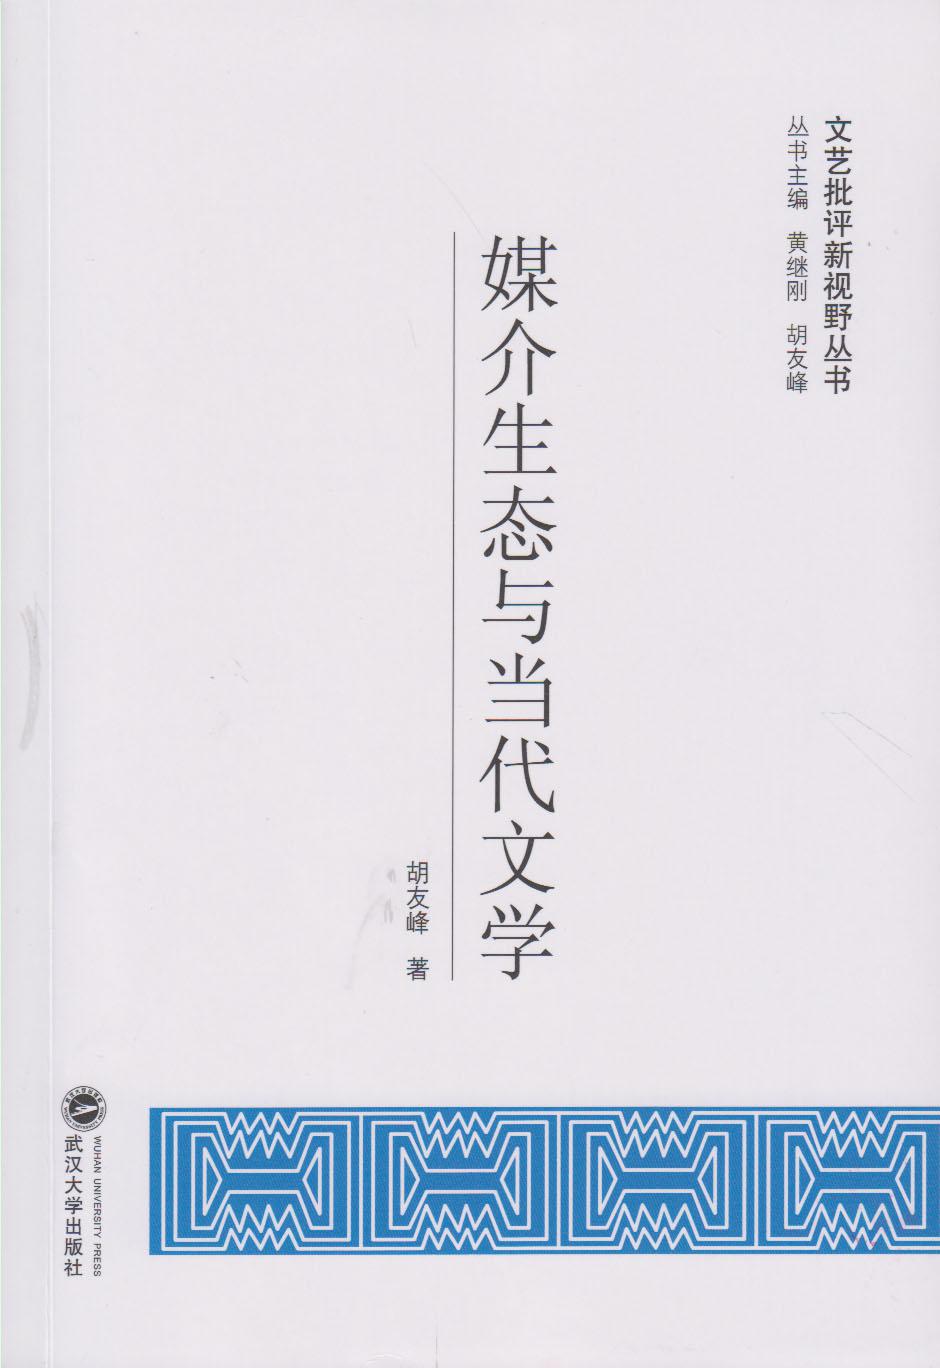 媒介生态与当代文学  胡友峰  武汉大学出版社